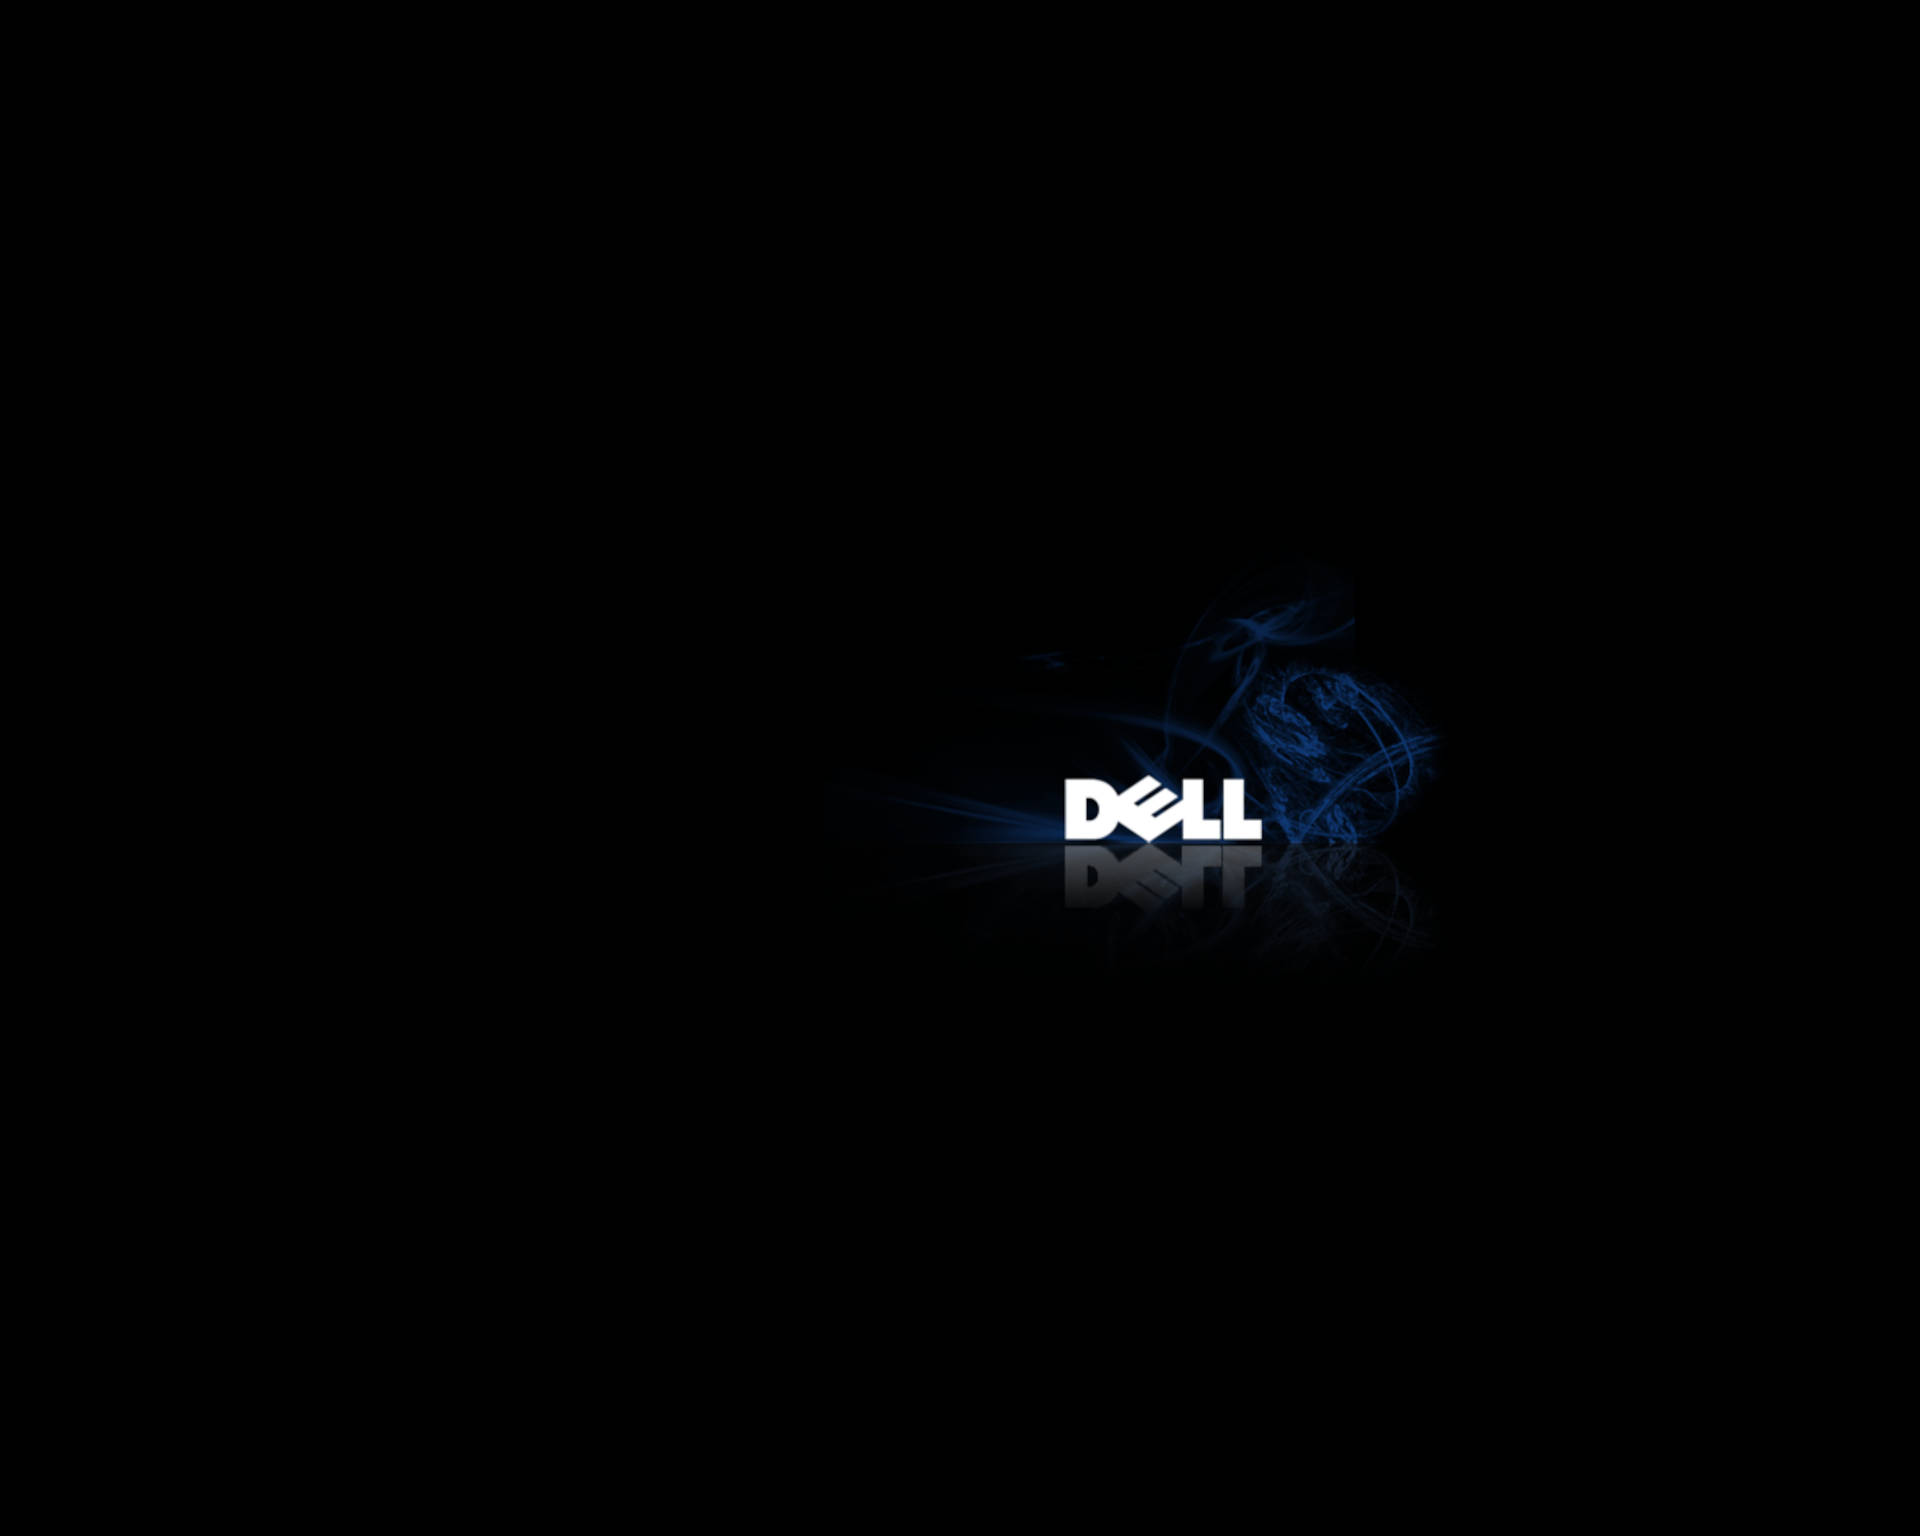 Dark Dell Wallpaper 84044 - Baltana